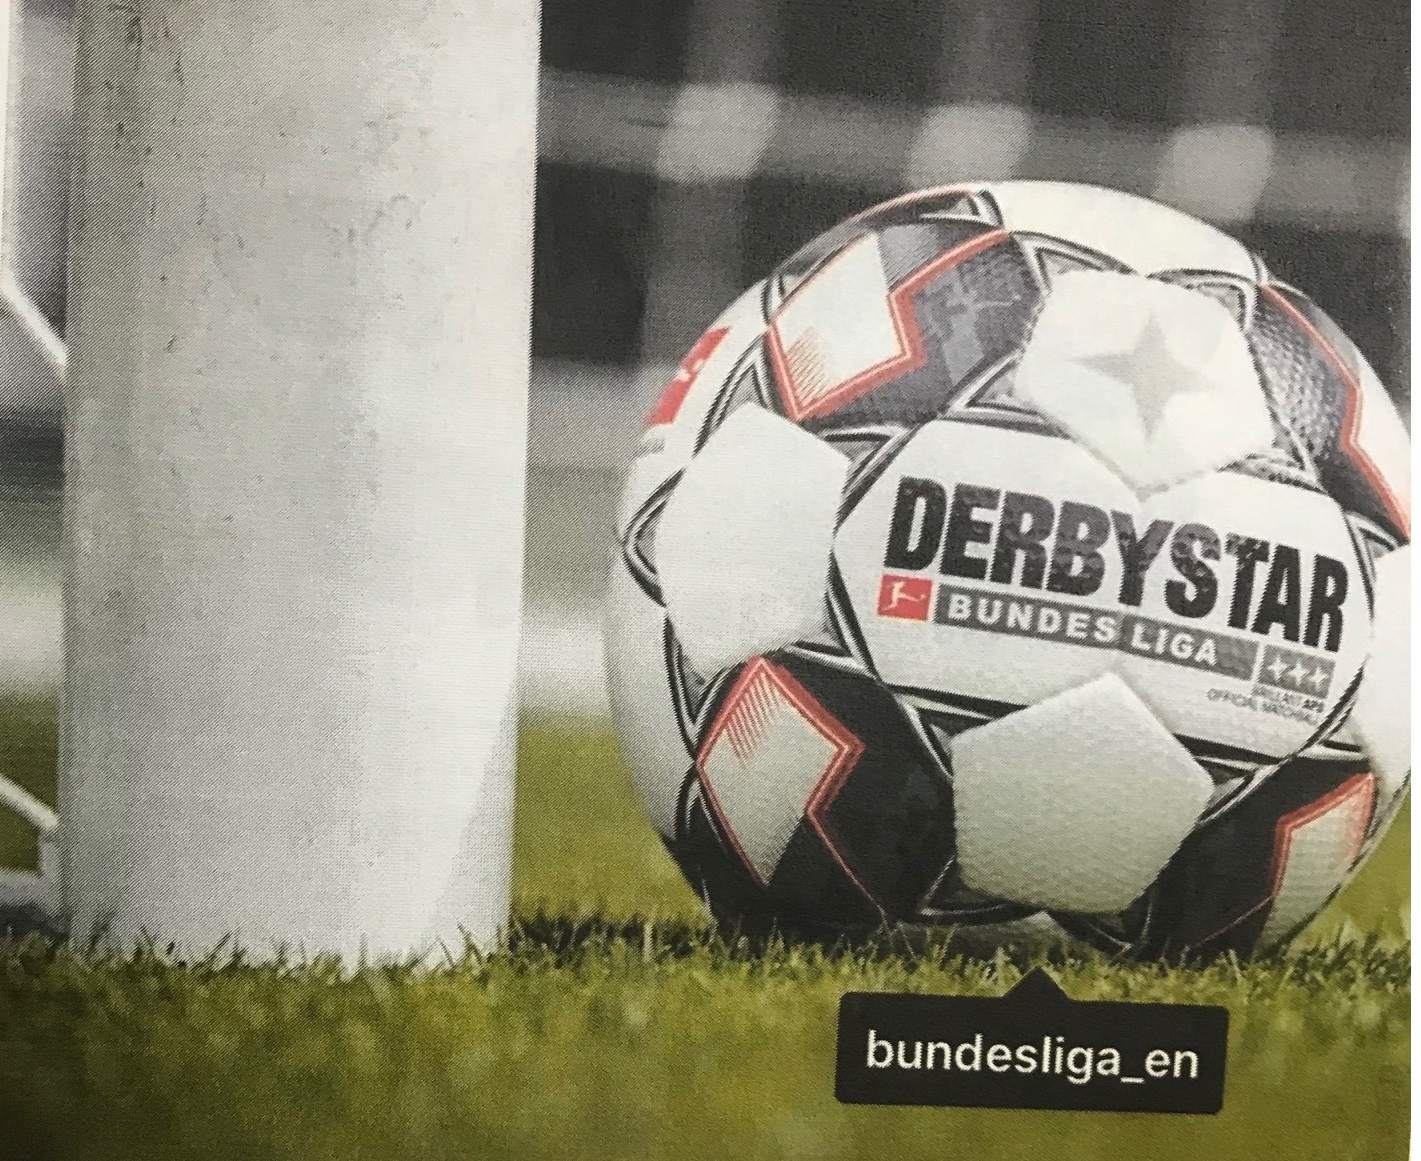 ダービースターボールの秘密 サッカーゴール サッカー用品の企画 製造 販売 モワスポーツ